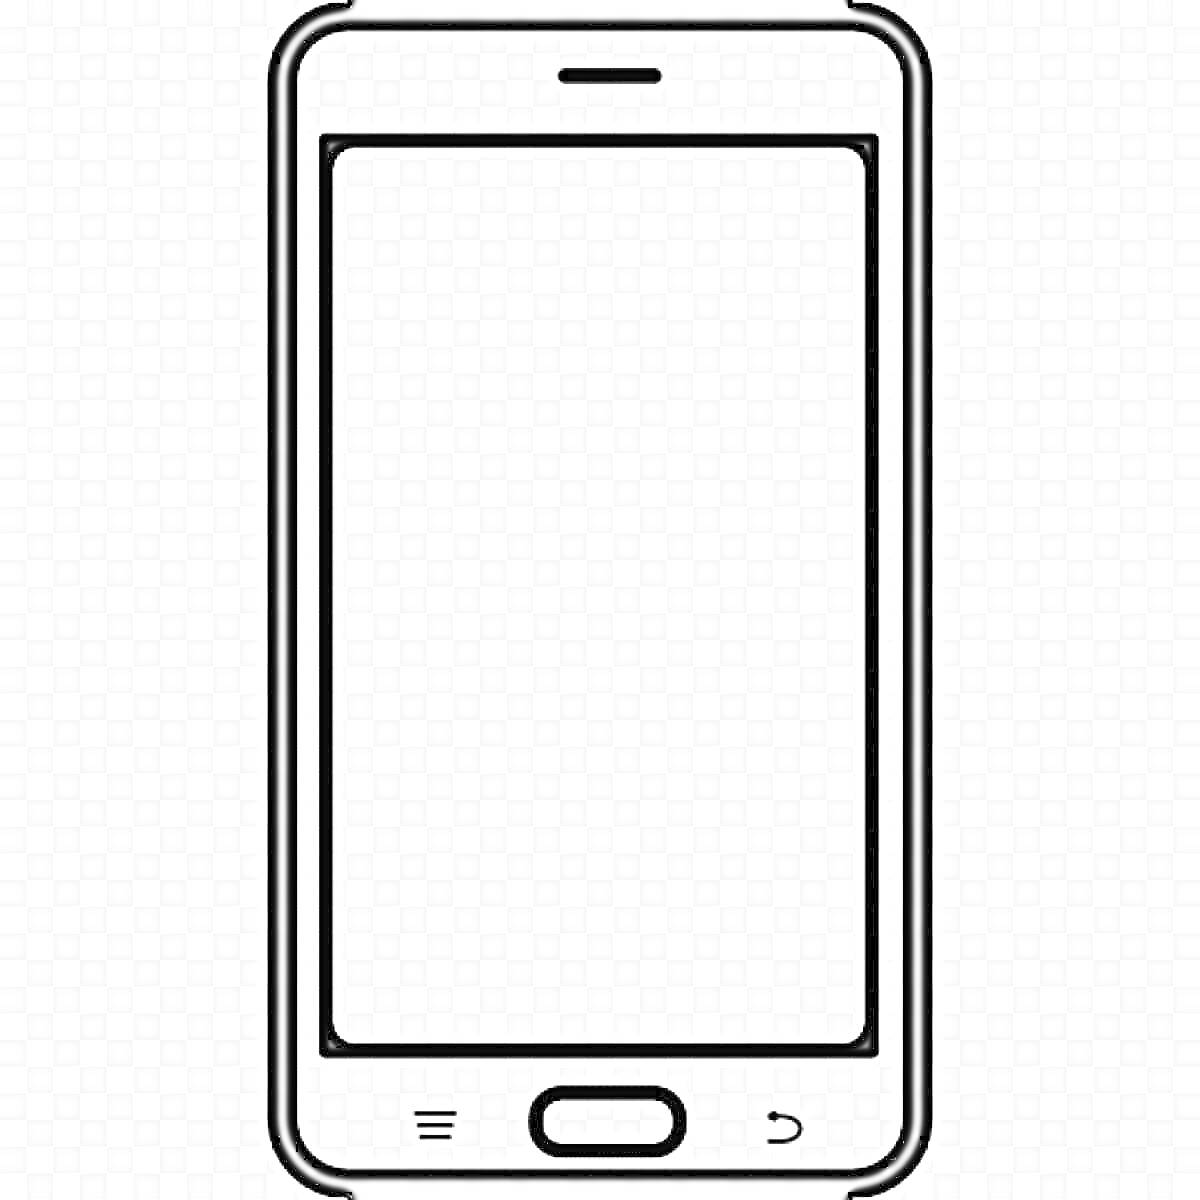 Смартфон с экраном, верхней вырезкой, нижними кнопками и внешней рамкой